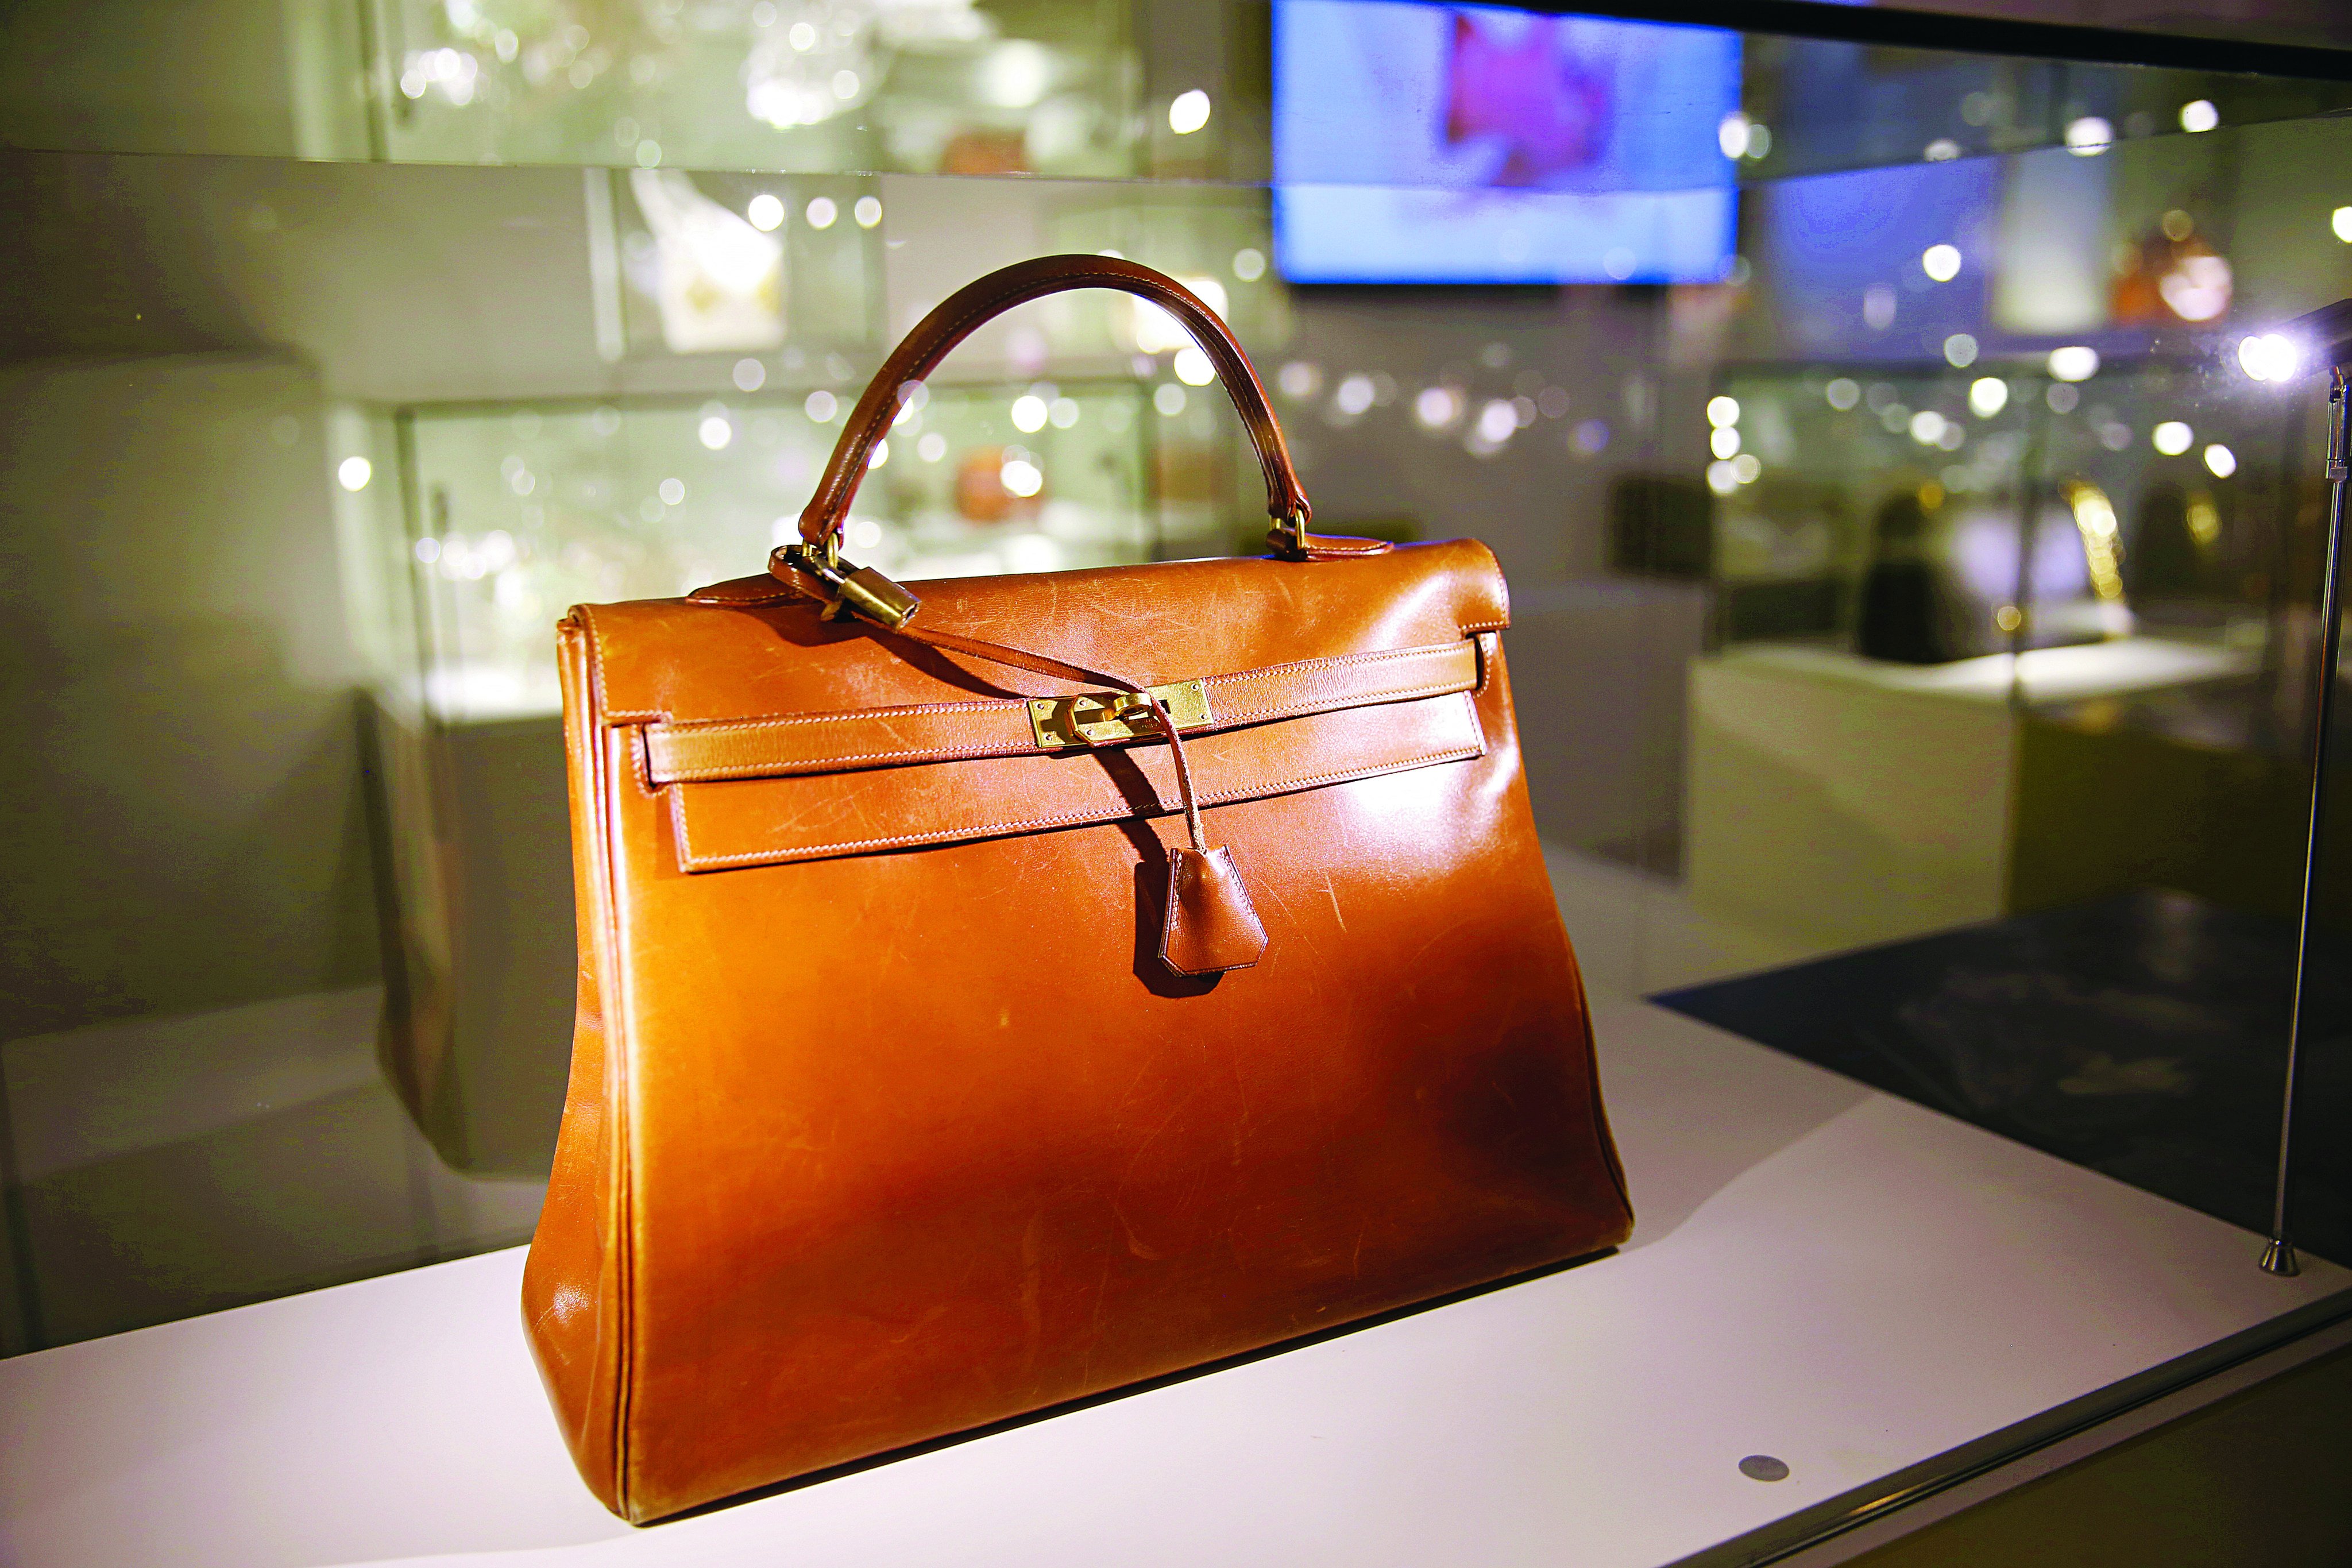 Hong Kong tycoon auctions 77 handbags, including 6 diamond Hermès